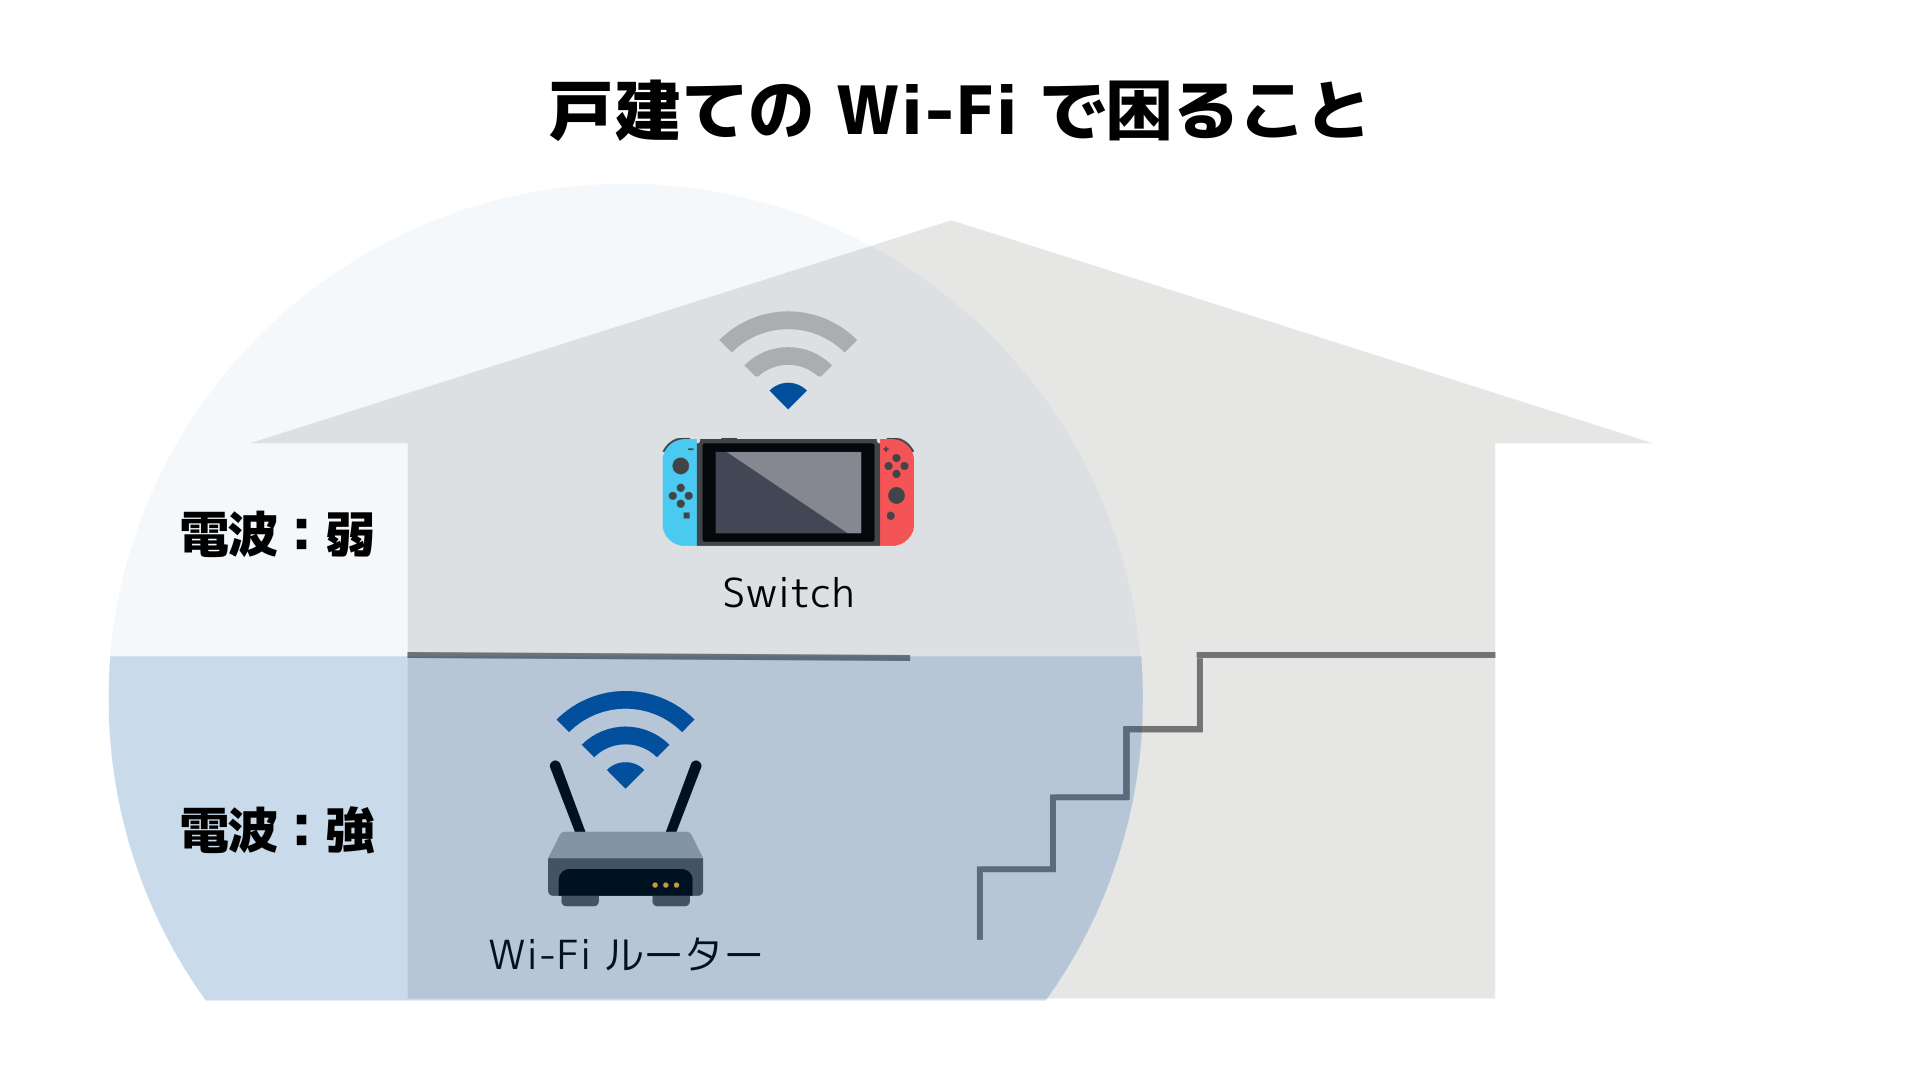 戸建てのWi-Fiで困ることのイメージ図